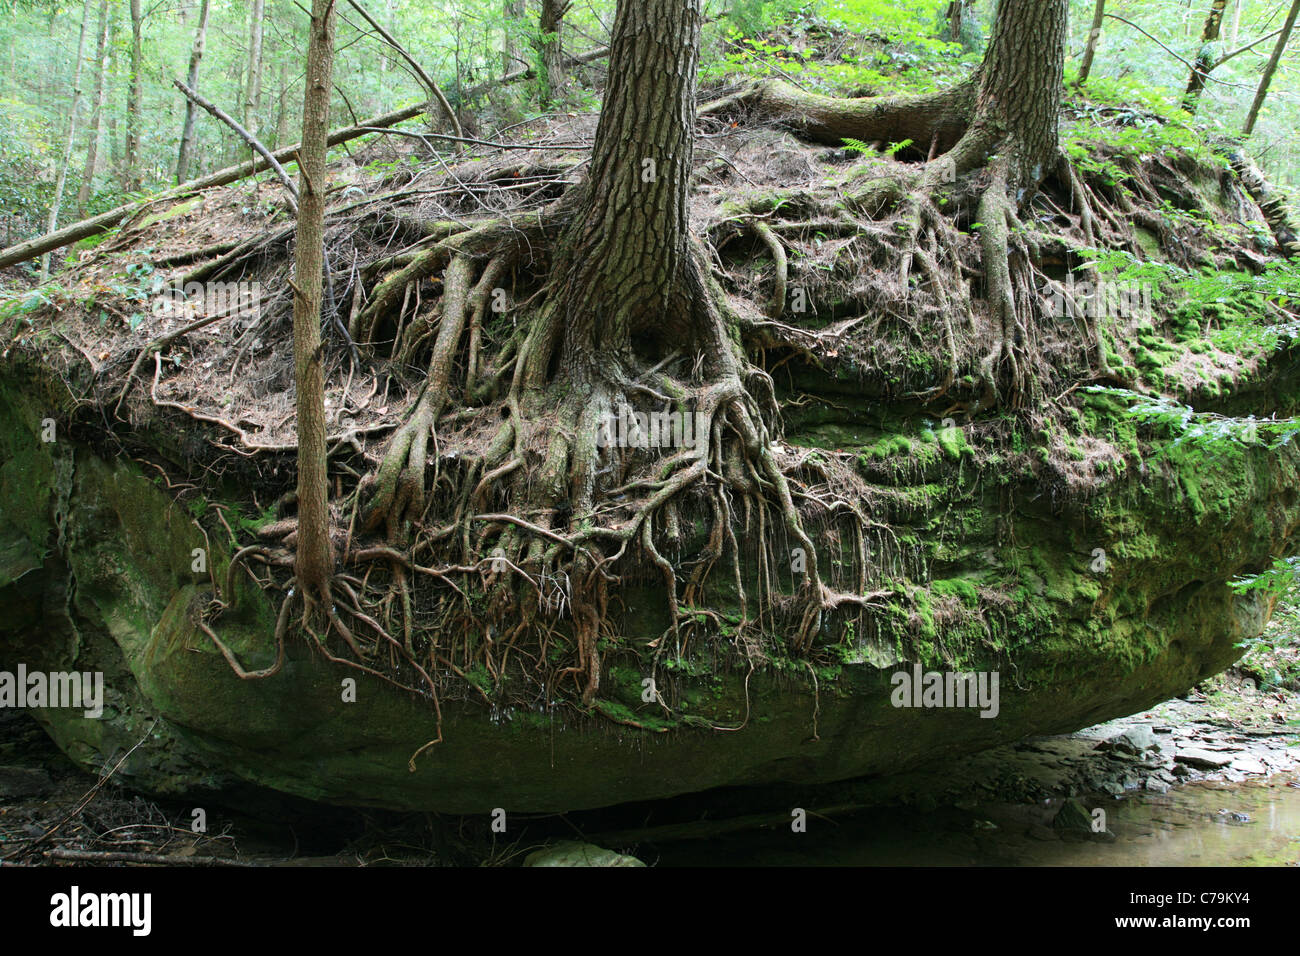 Los árboles con raíces descubiertas creciendo encima de una roca Foto de stock